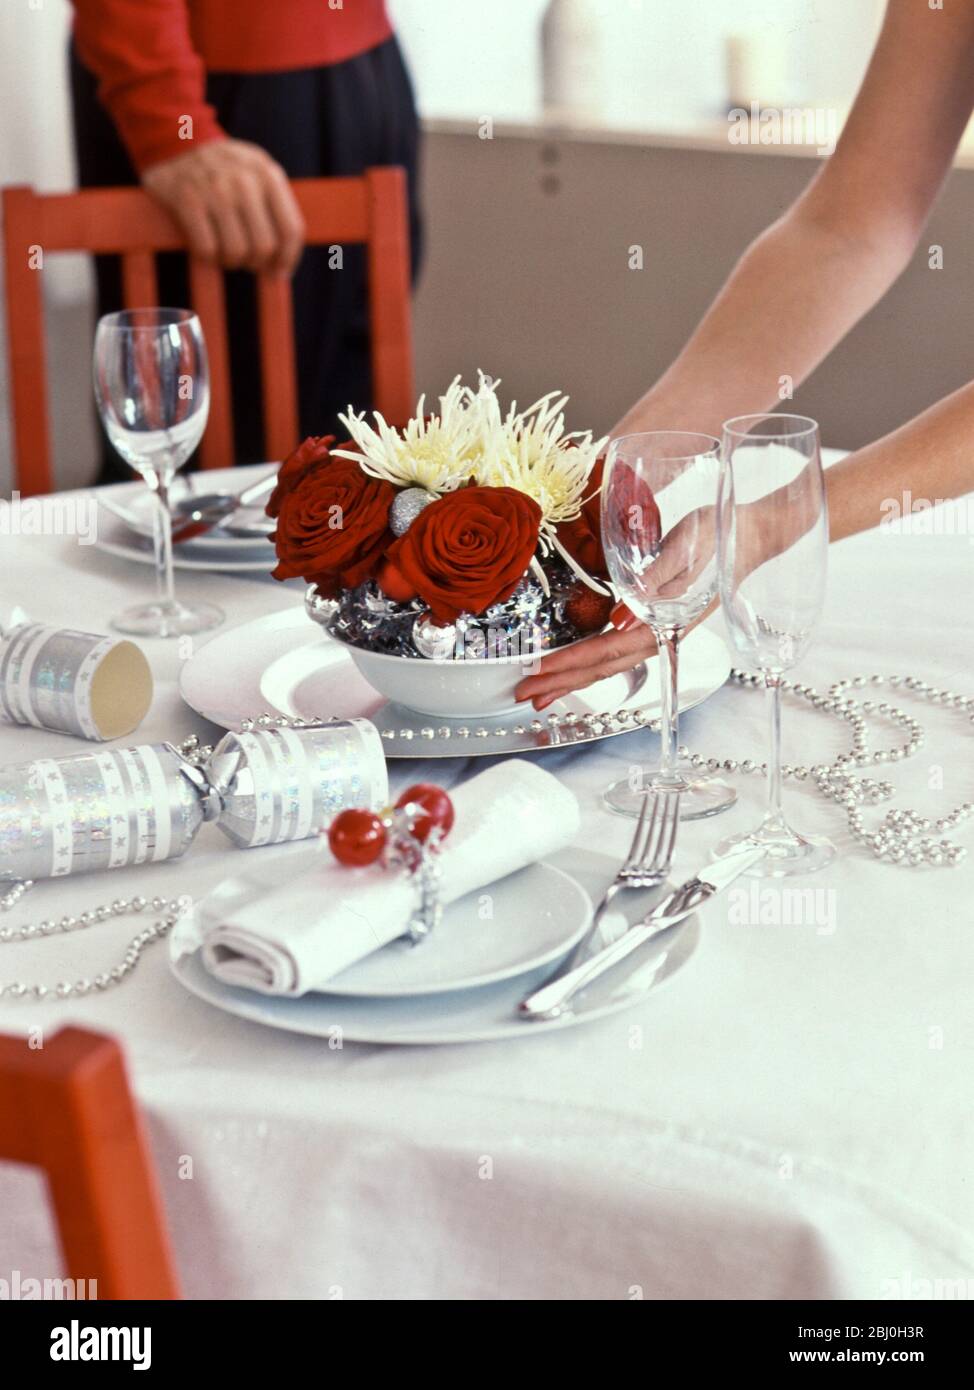 Weihnachtliche Tischdekoration aus tiefroten Rosen und stacheligen Chrysanthemen mit silbernen Kugeln, die auf den Tisch gestellt werden - Stockfoto